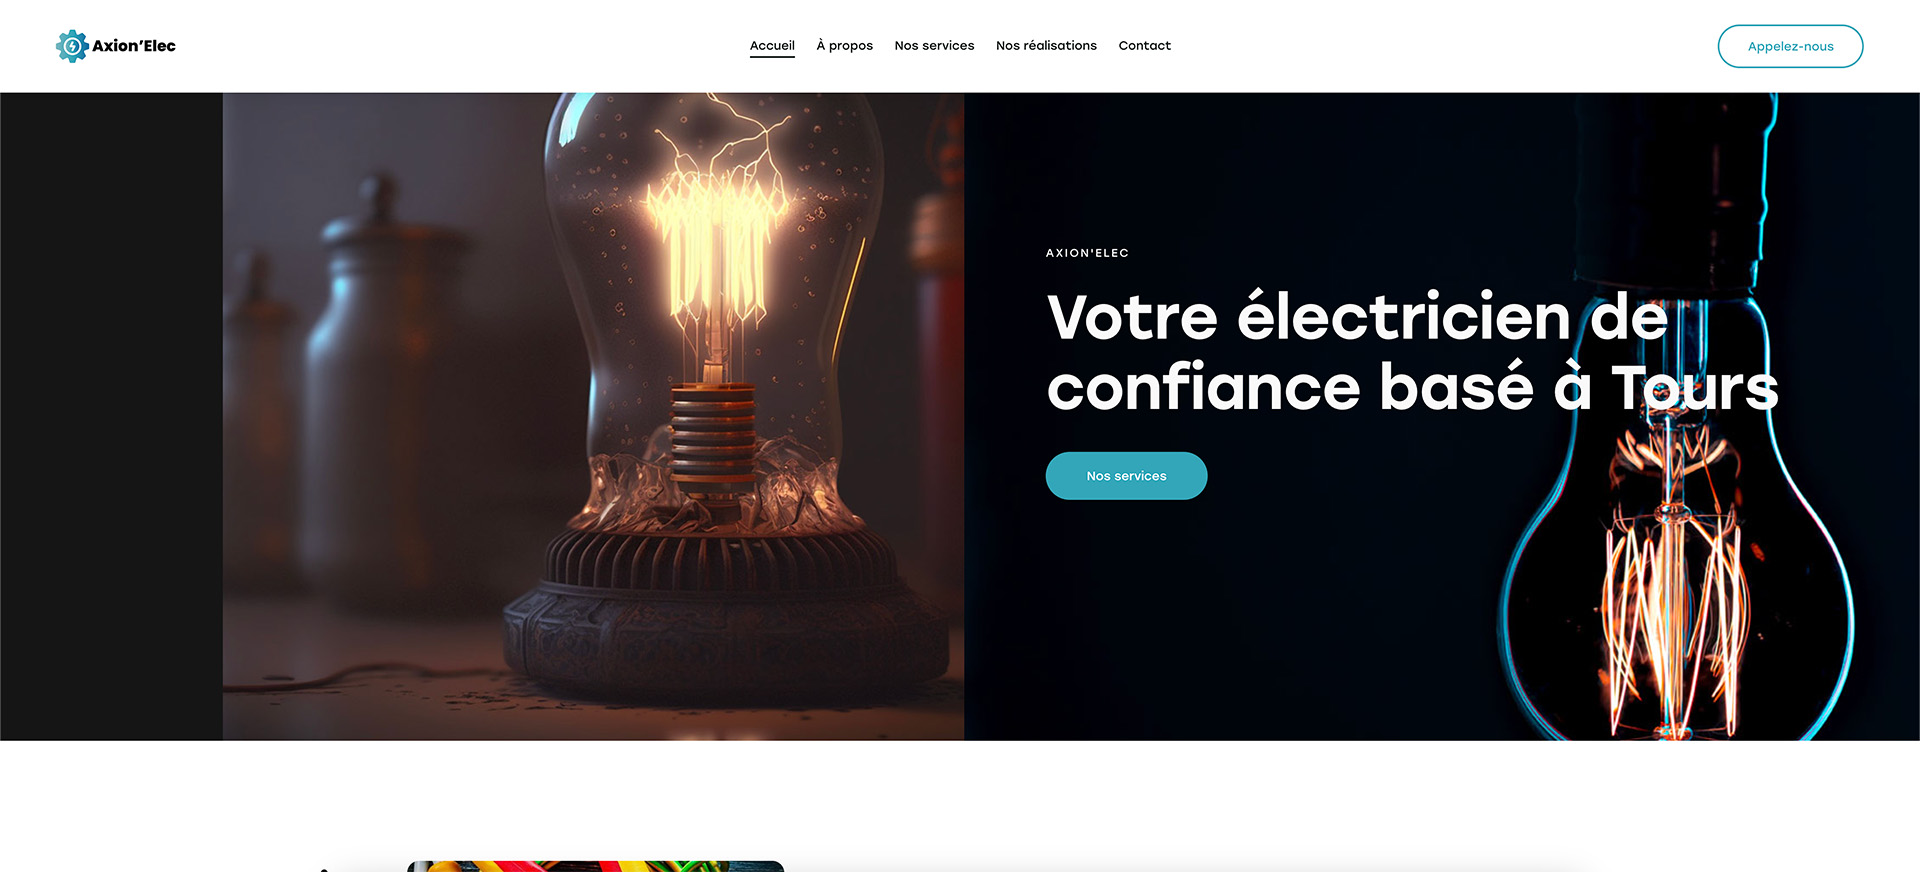 Design du thème 'Électricien', spécialement conçu pour les sites web d'entreprises d'électricité.